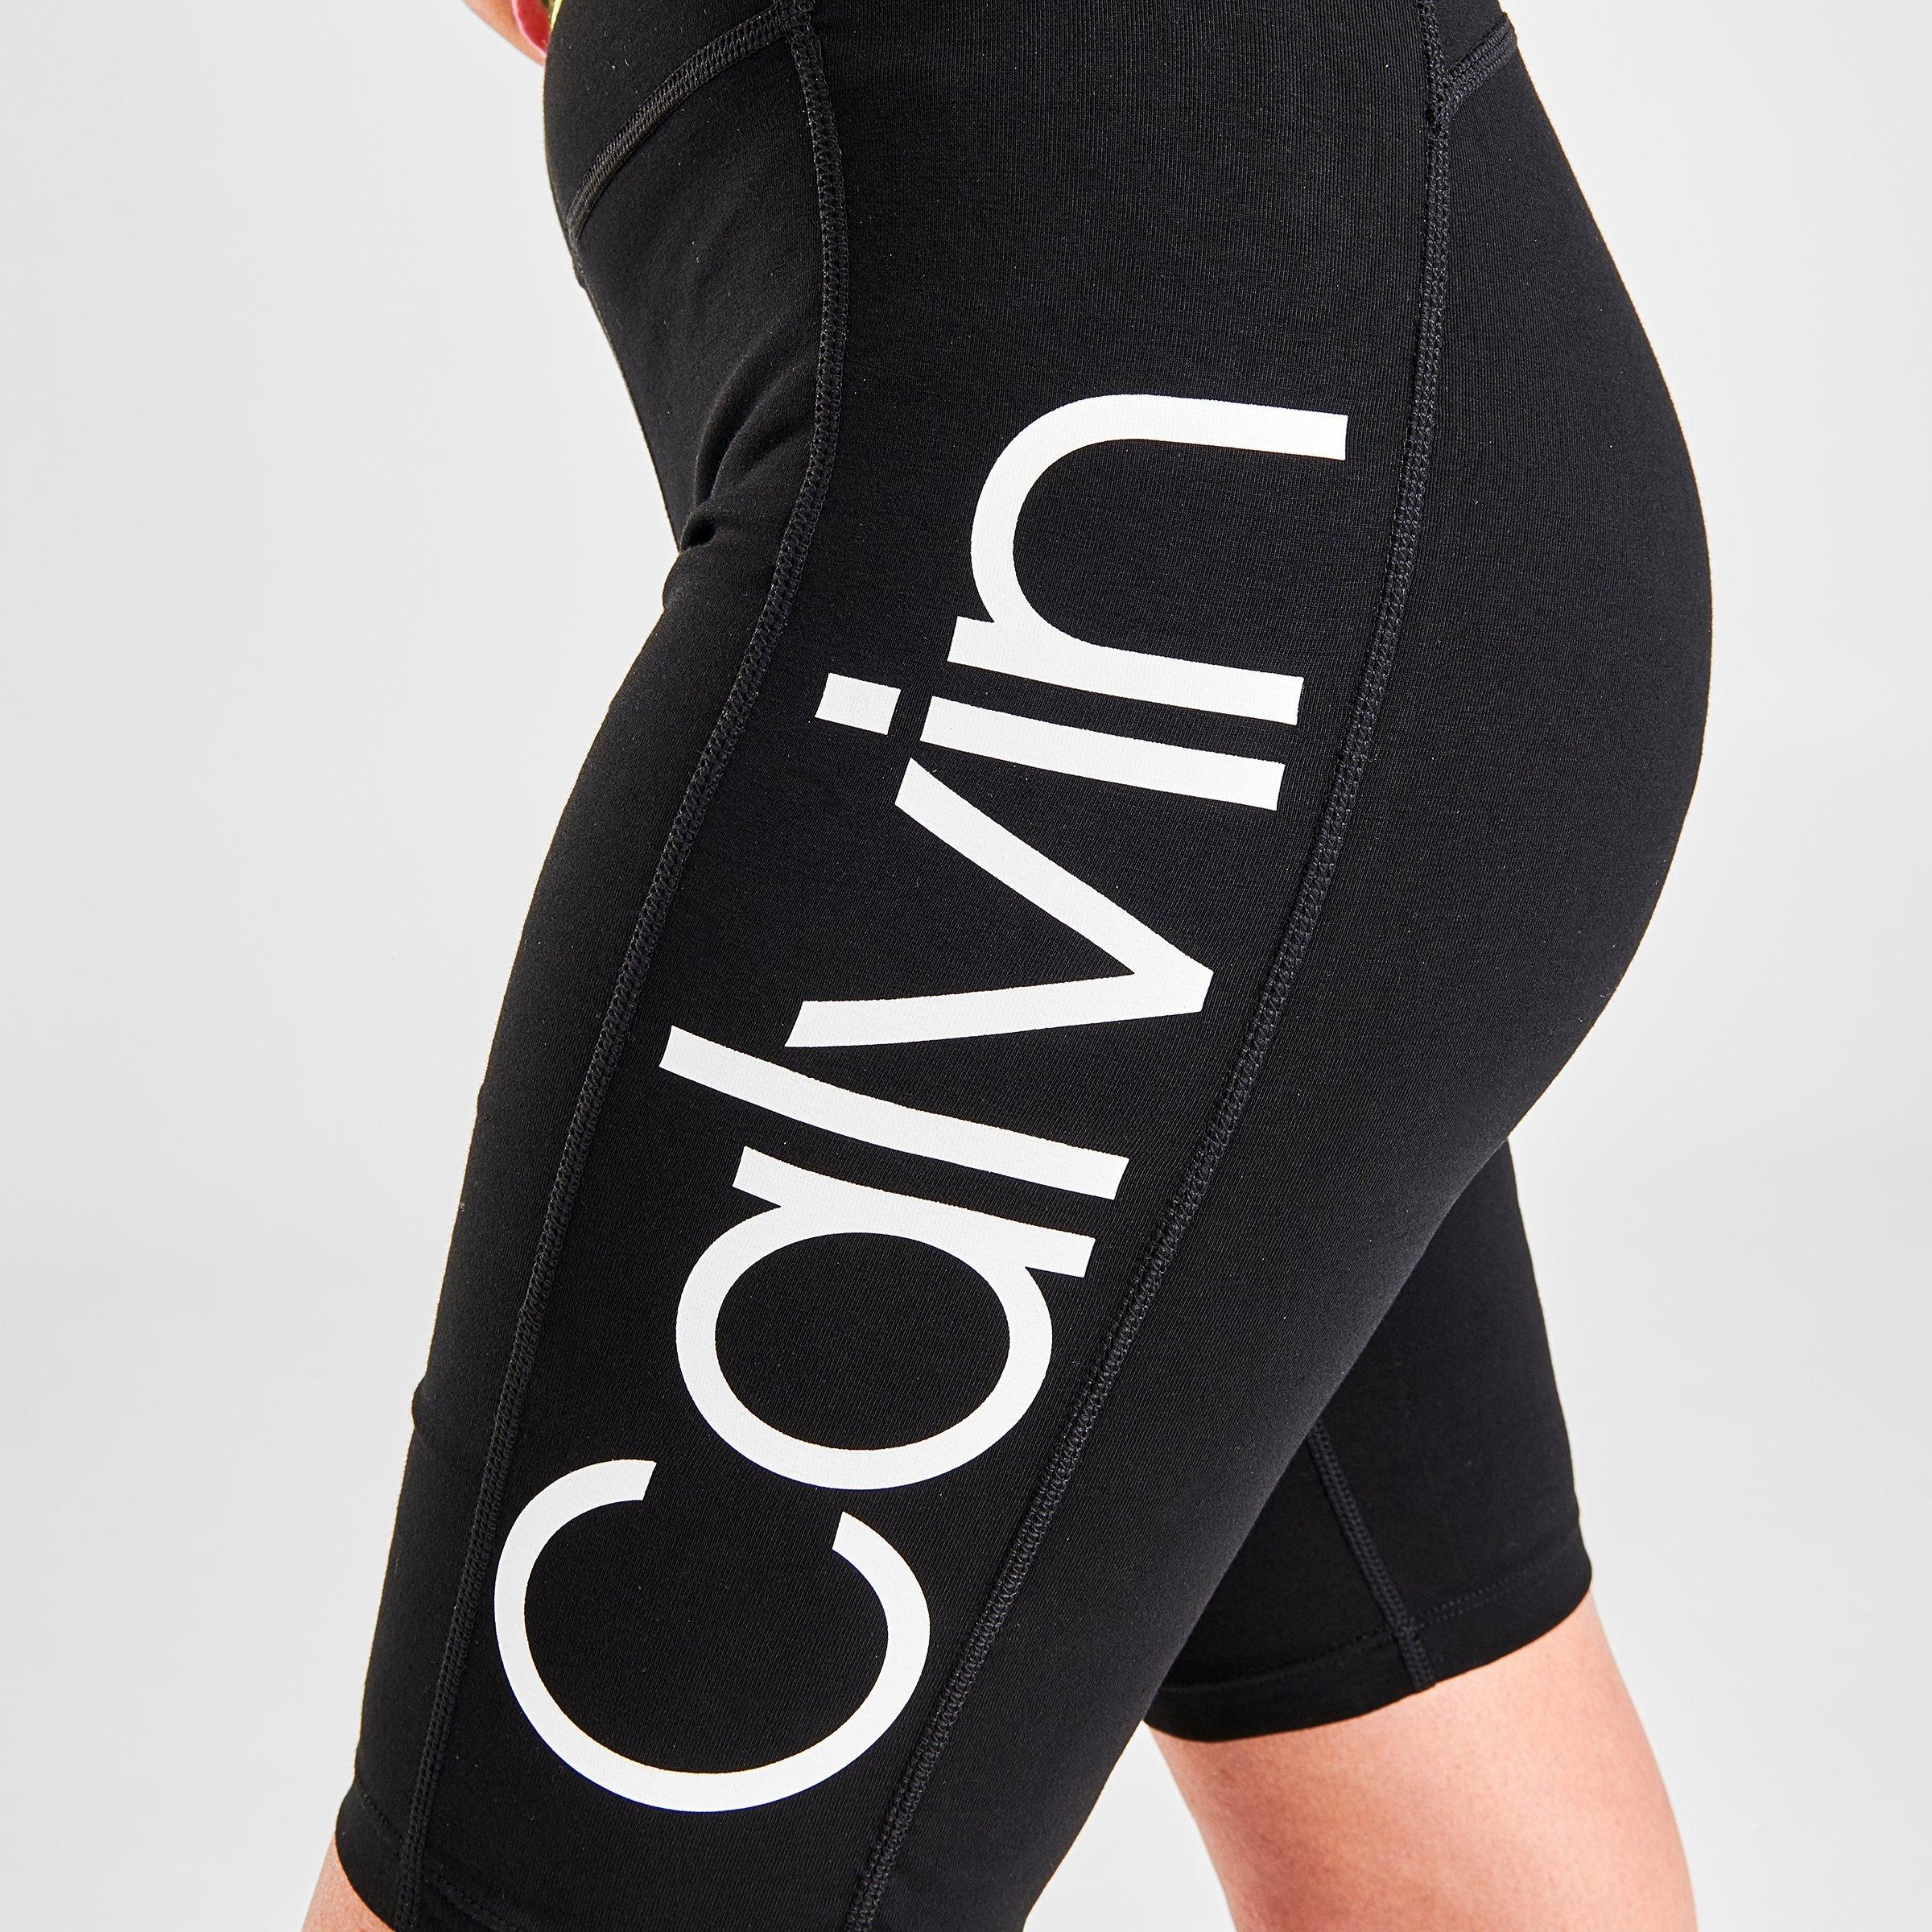 calvin klein logo shorts